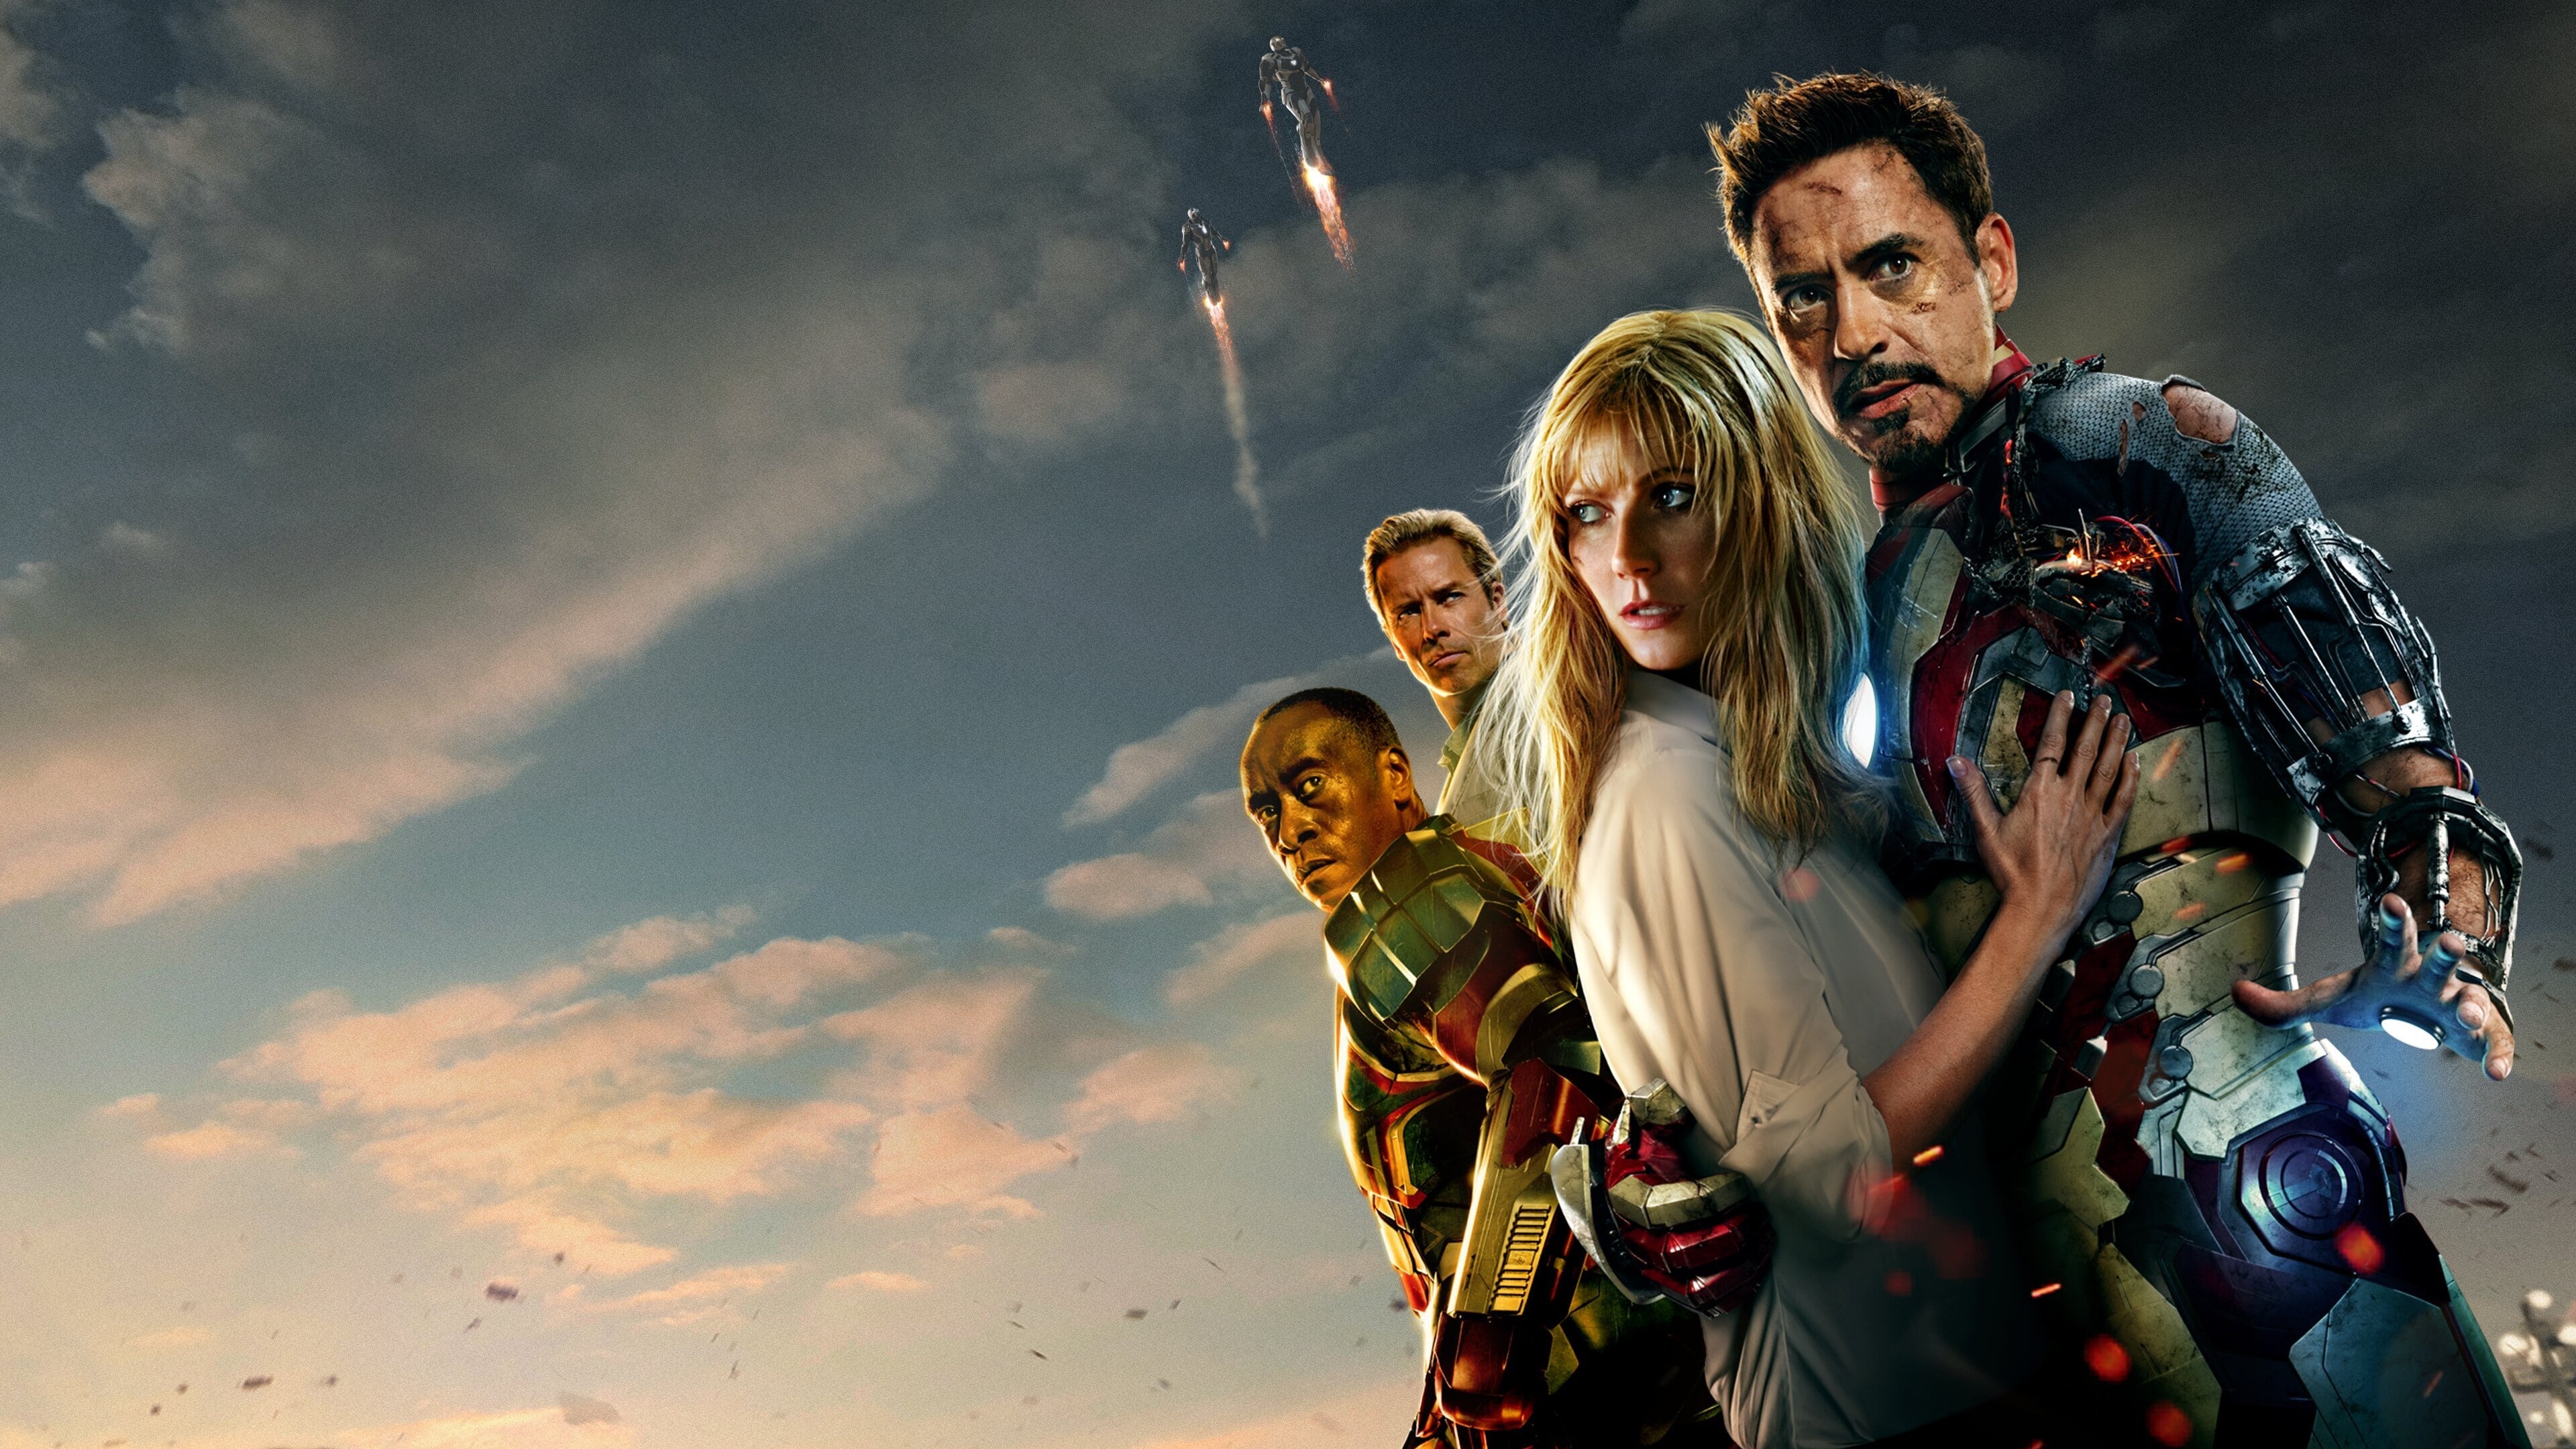 Iron Man 3 (2013) ไอรอน แมน 3